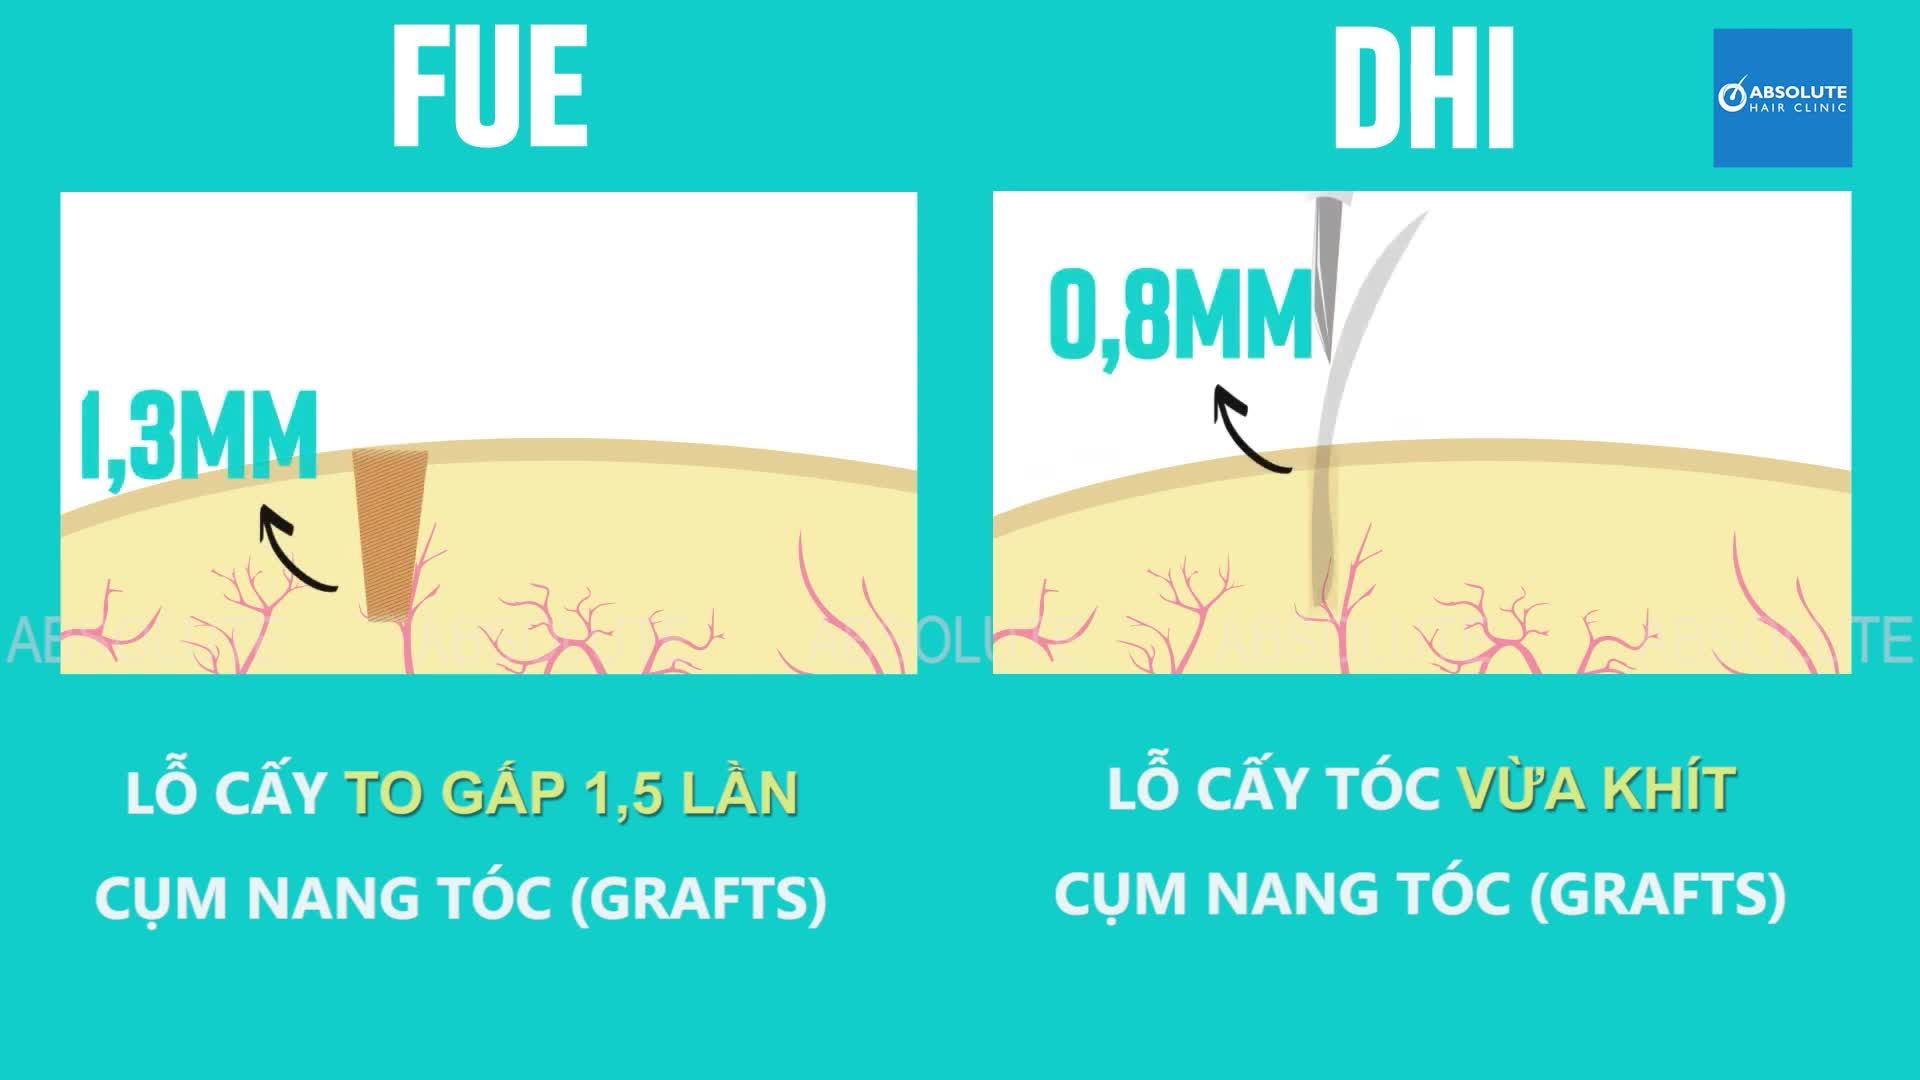 Sự khác nhau giữa cấy tóc DHI so với cấy tóc FUE truyền thống